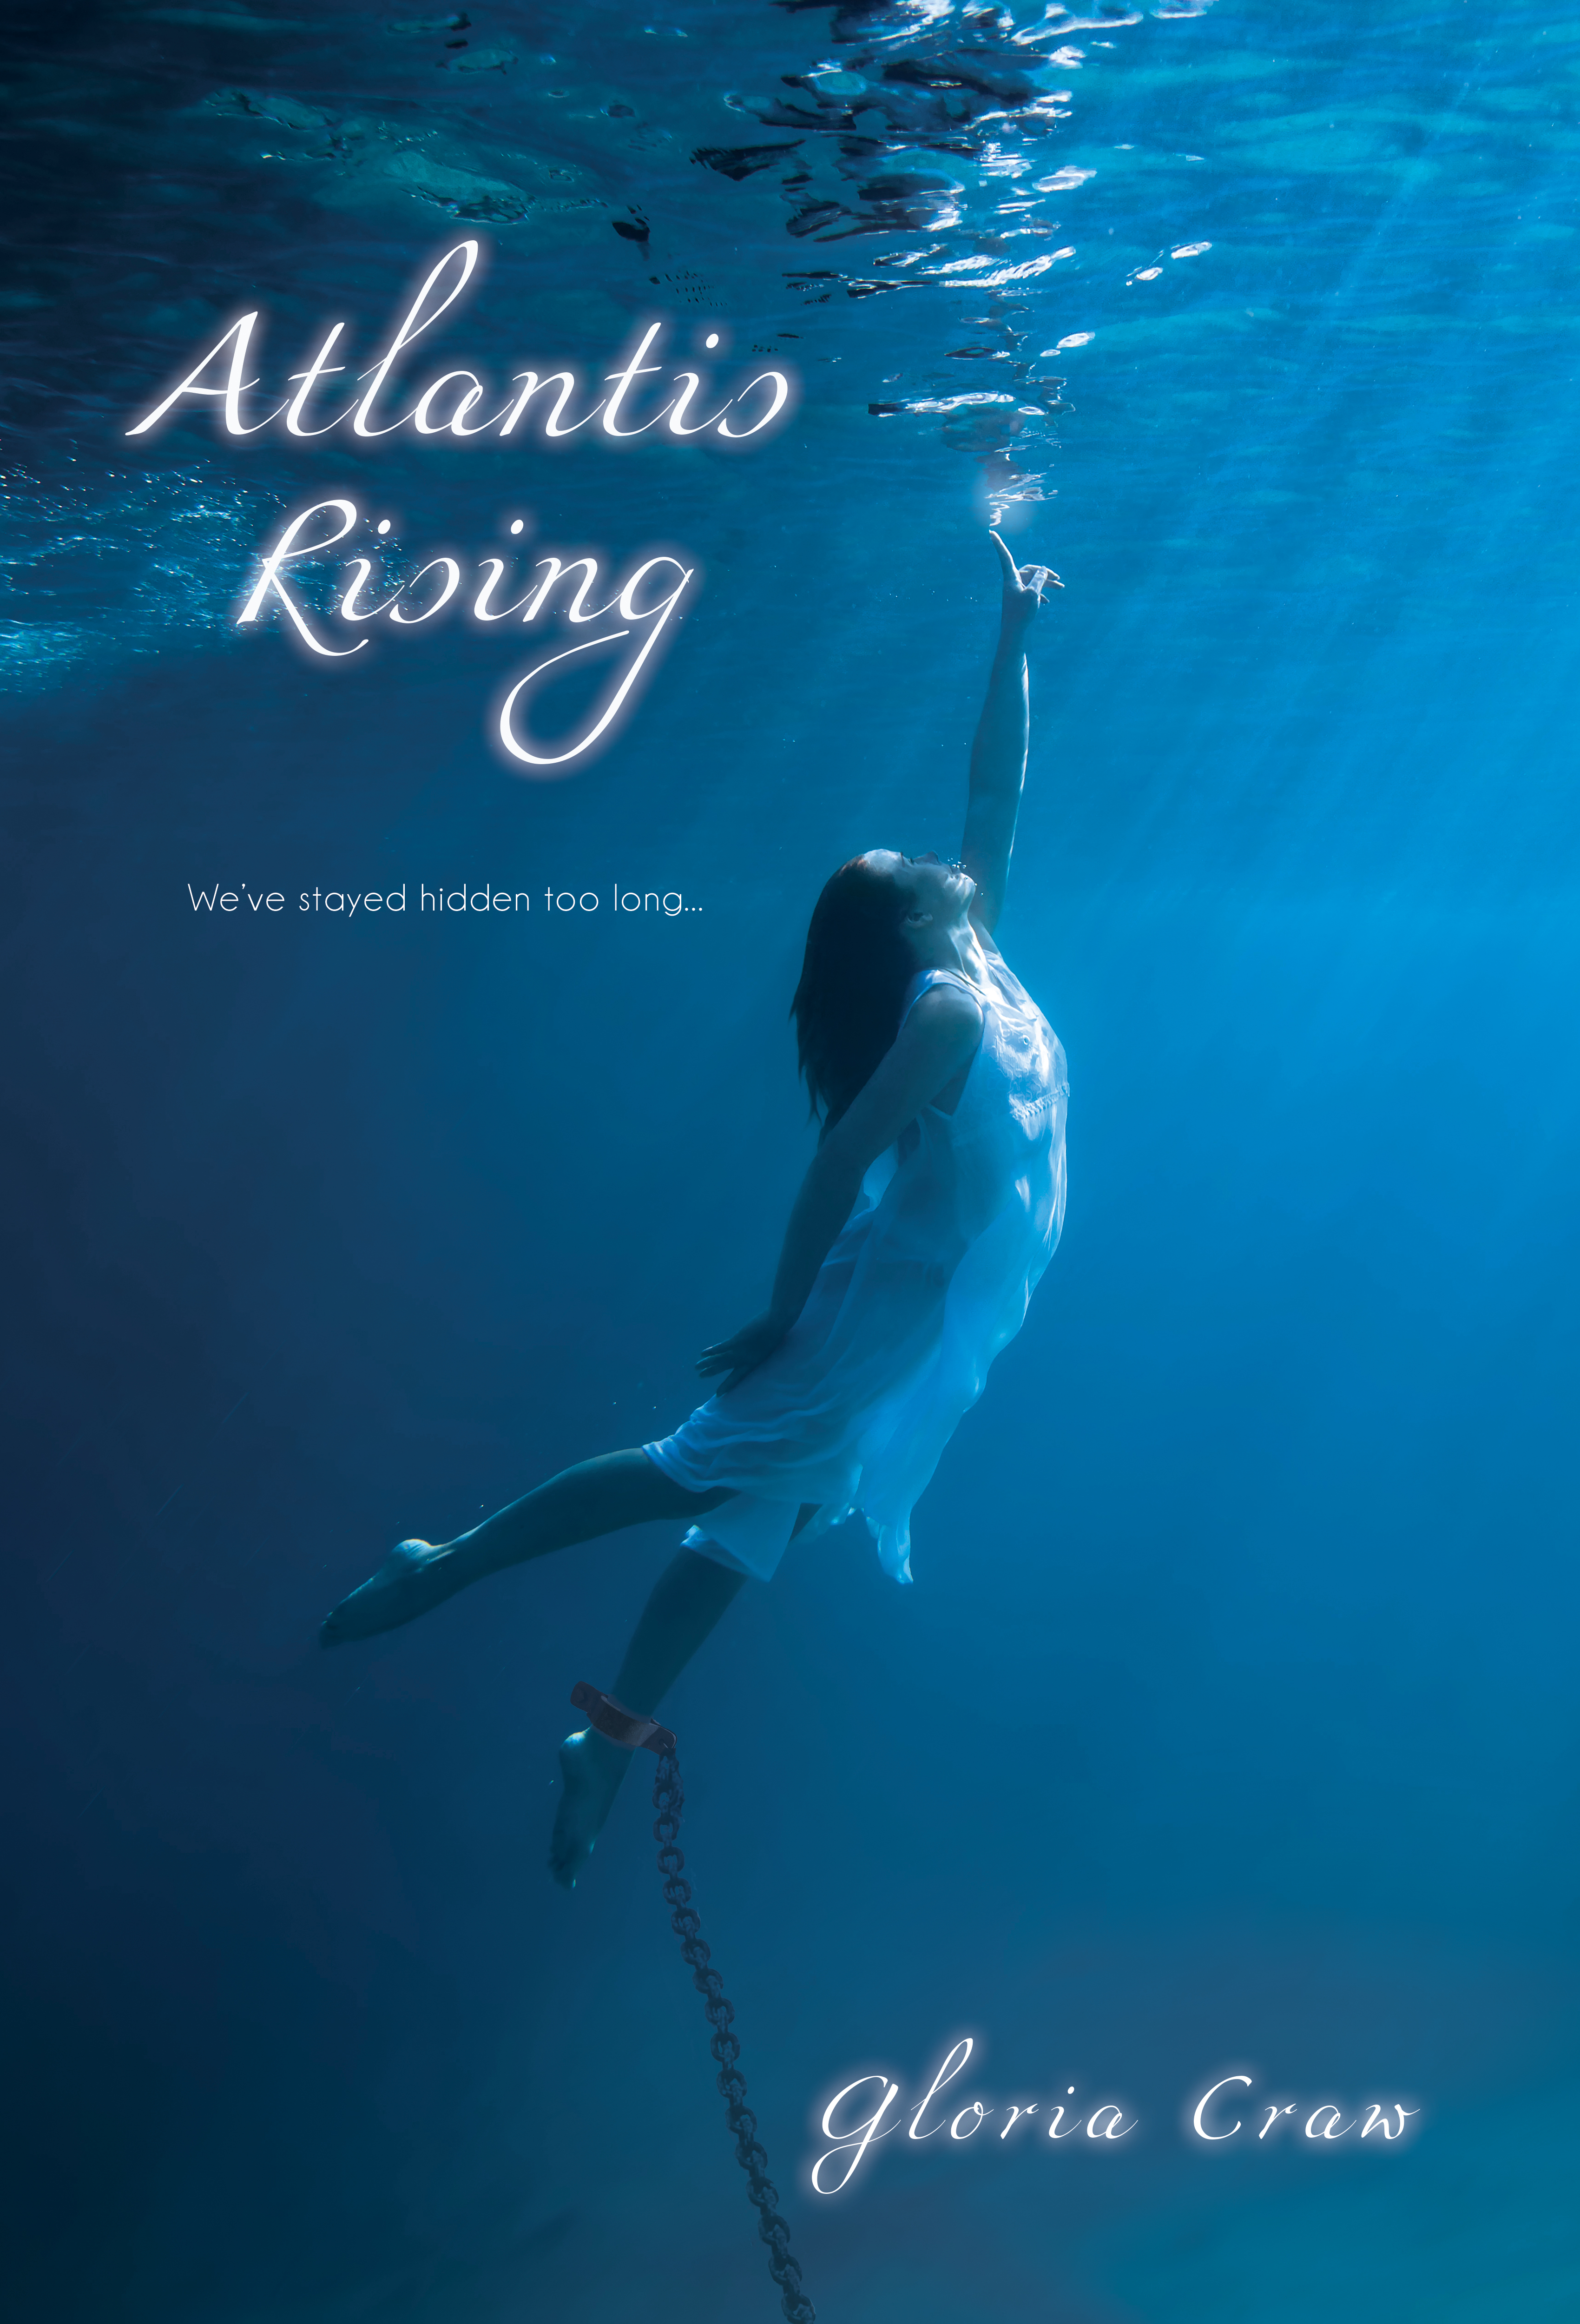 Atlantis Rising by Gloria Craw